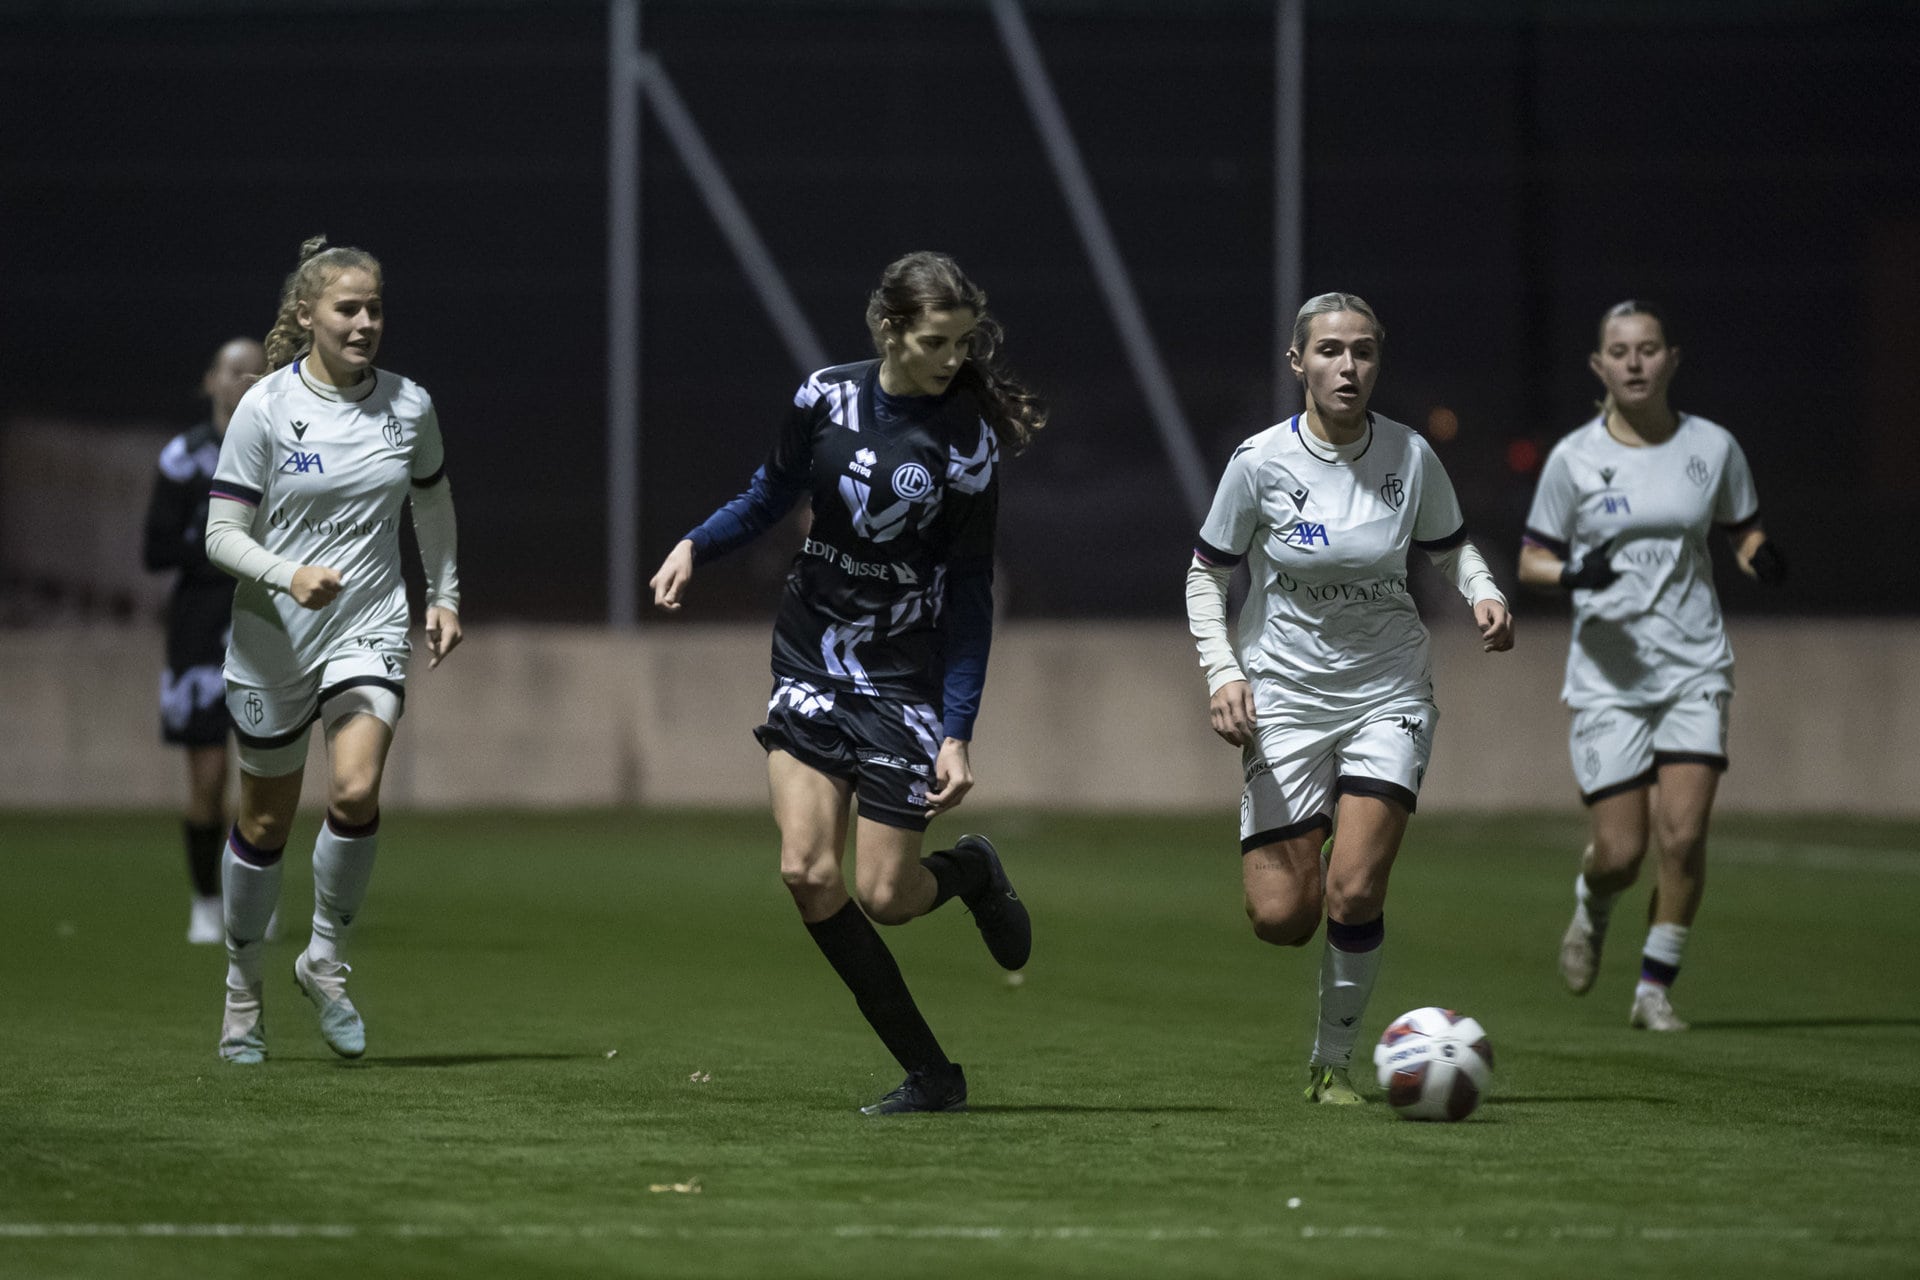 Il Lugano femminile perde agli ottavi della Coppa Svizzera Femminile